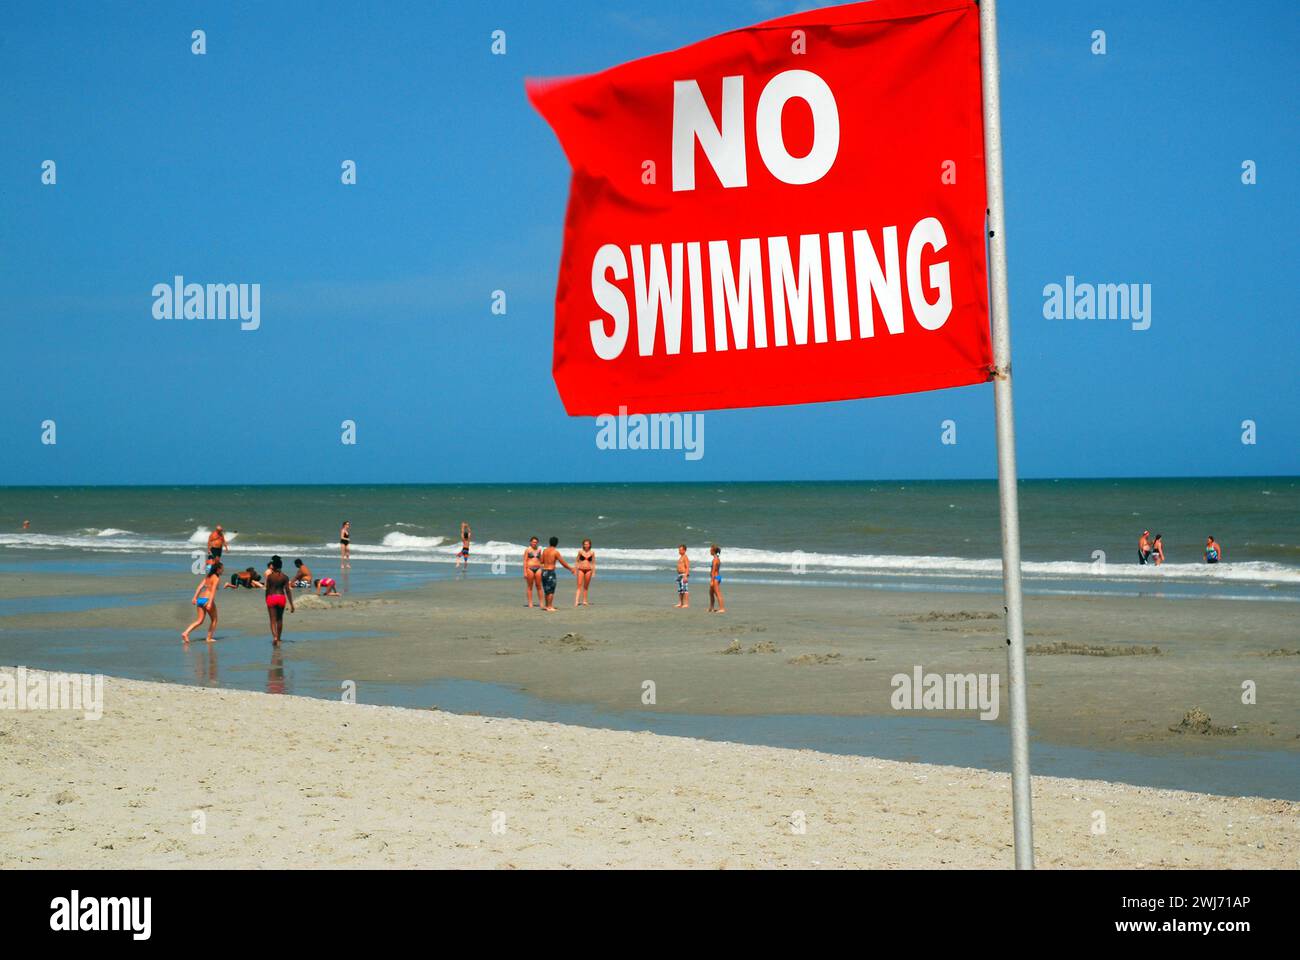 Nonostante l'avviso di sicurezza No Swimming, le persone in spiaggia continuano a nuotare nelle acque dell'oceano, indipendentemente dai pericoli Foto Stock